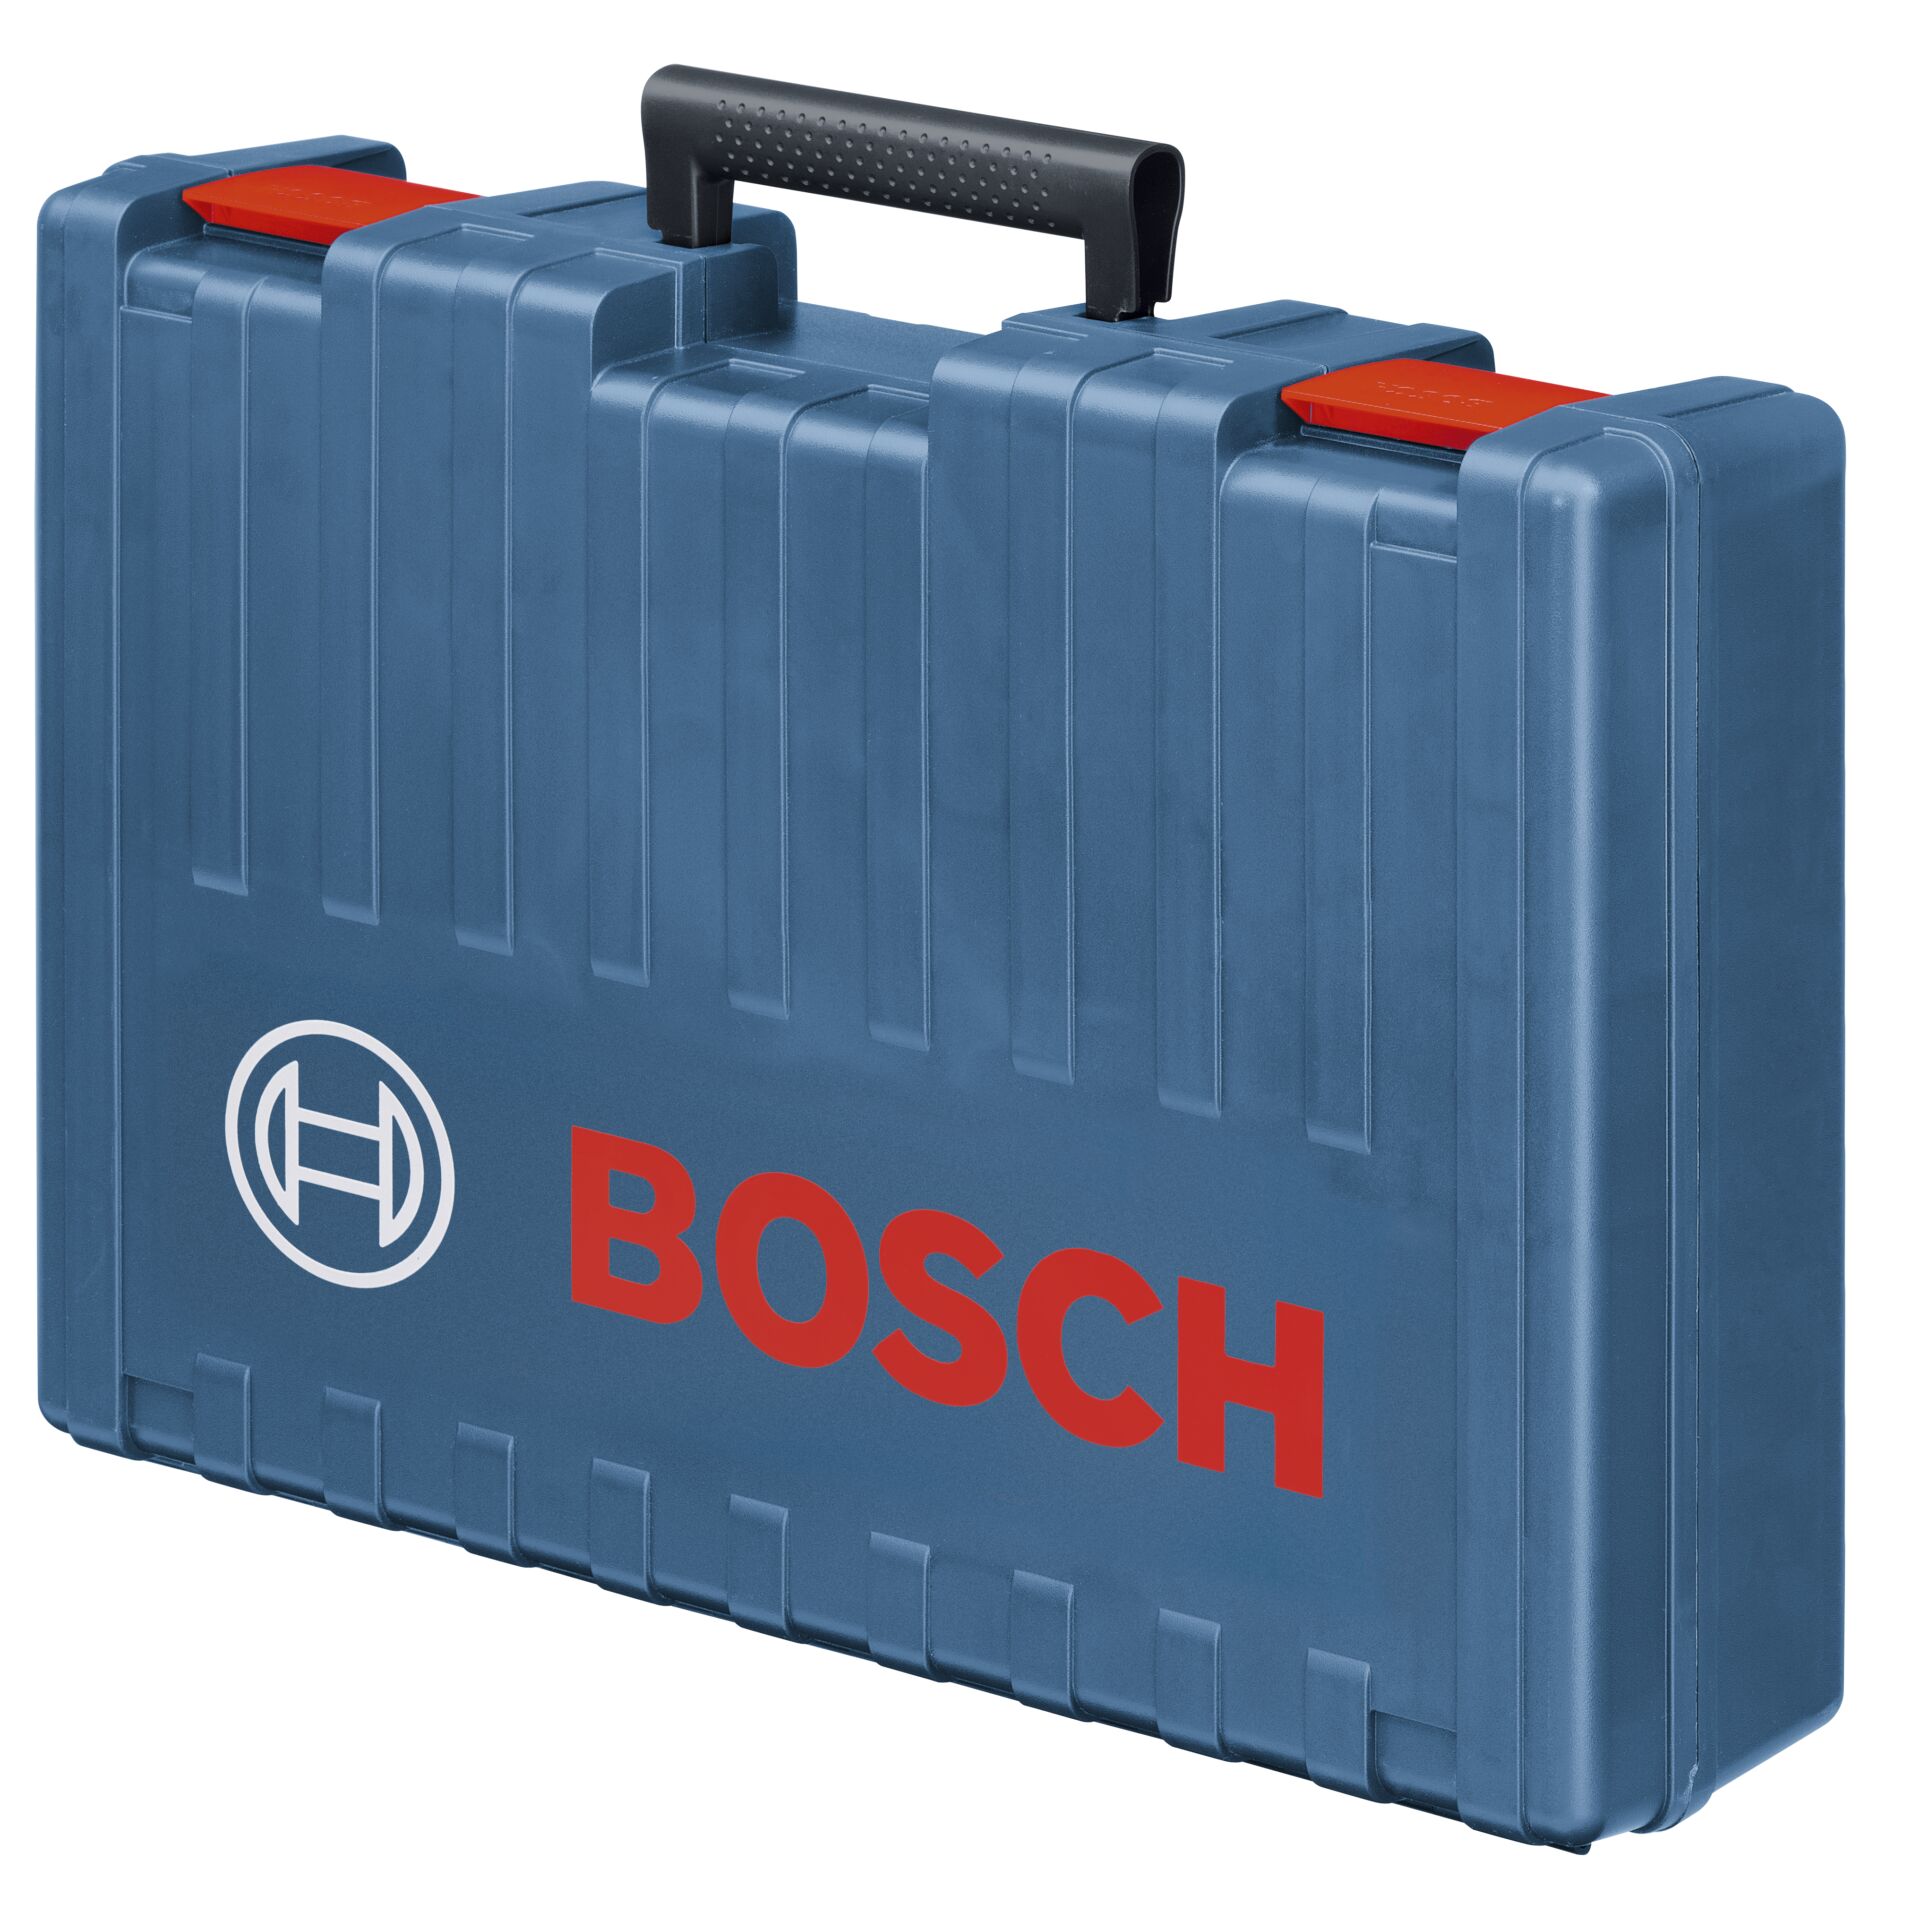 Bosch GSH 11 E Schlaghammer Koffer